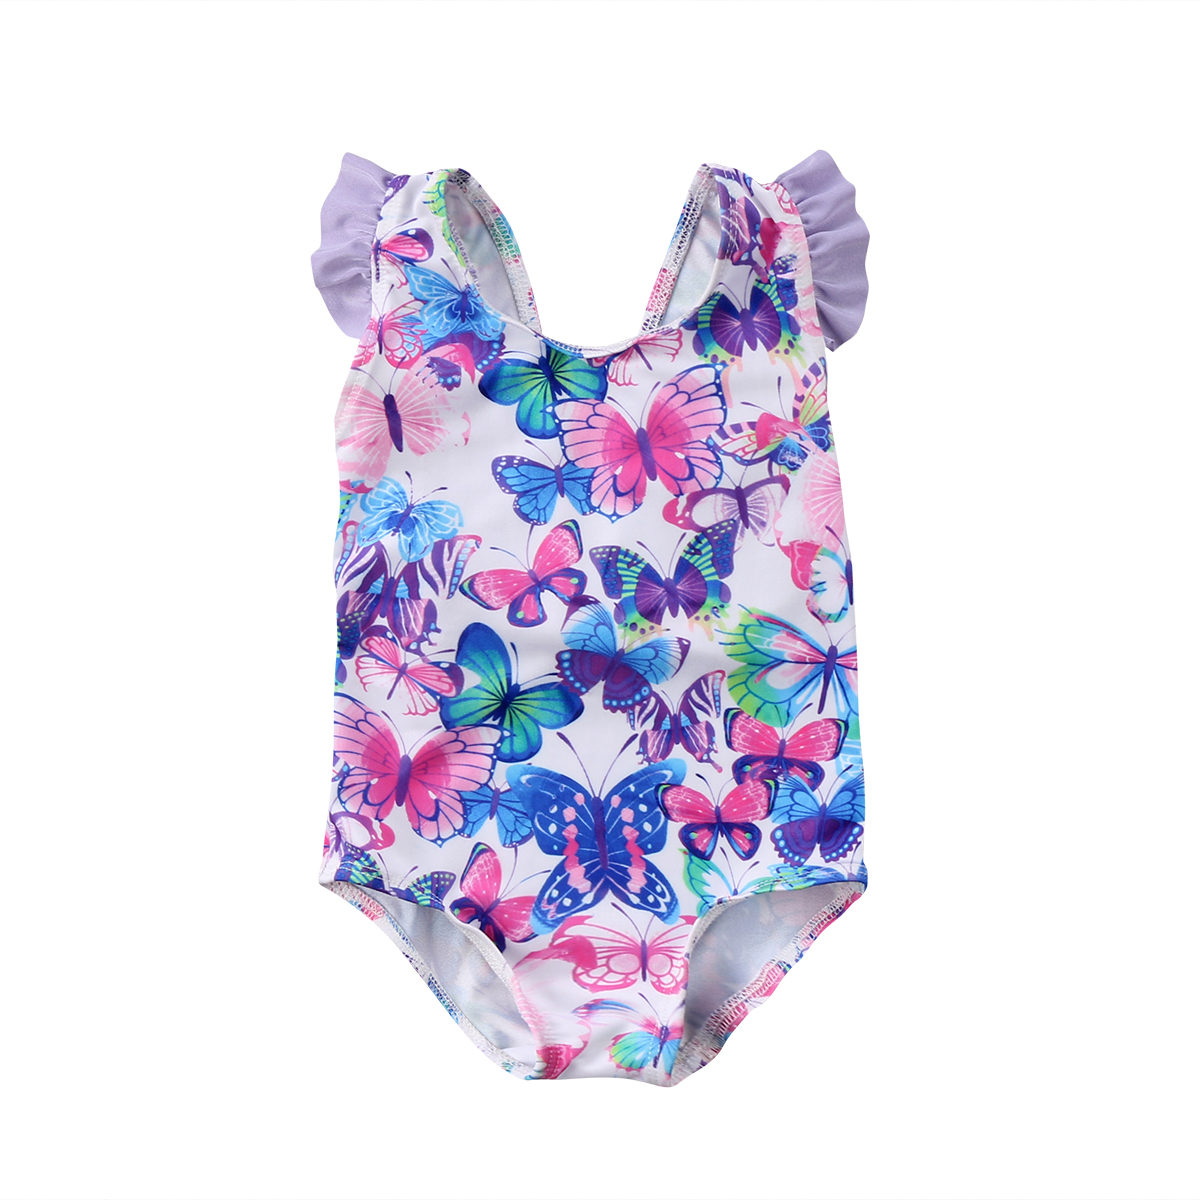 Børn baby pige badedragt blomst badetøj tankini bikini badedragt soldragt biquini strandtøj